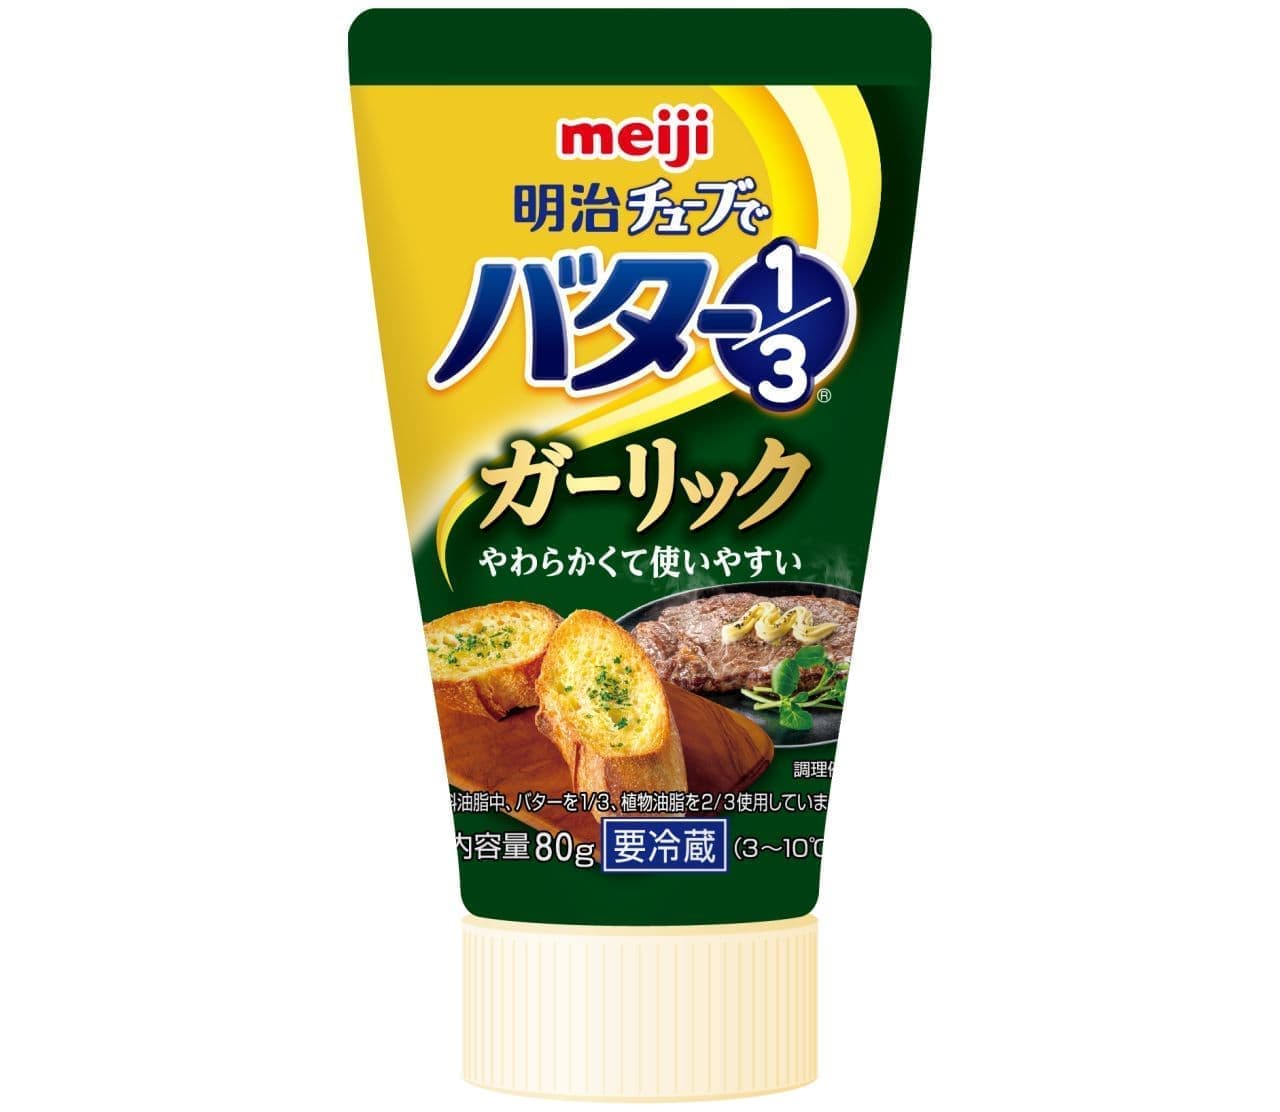 Butter 1/3 garlic in Meiji tube